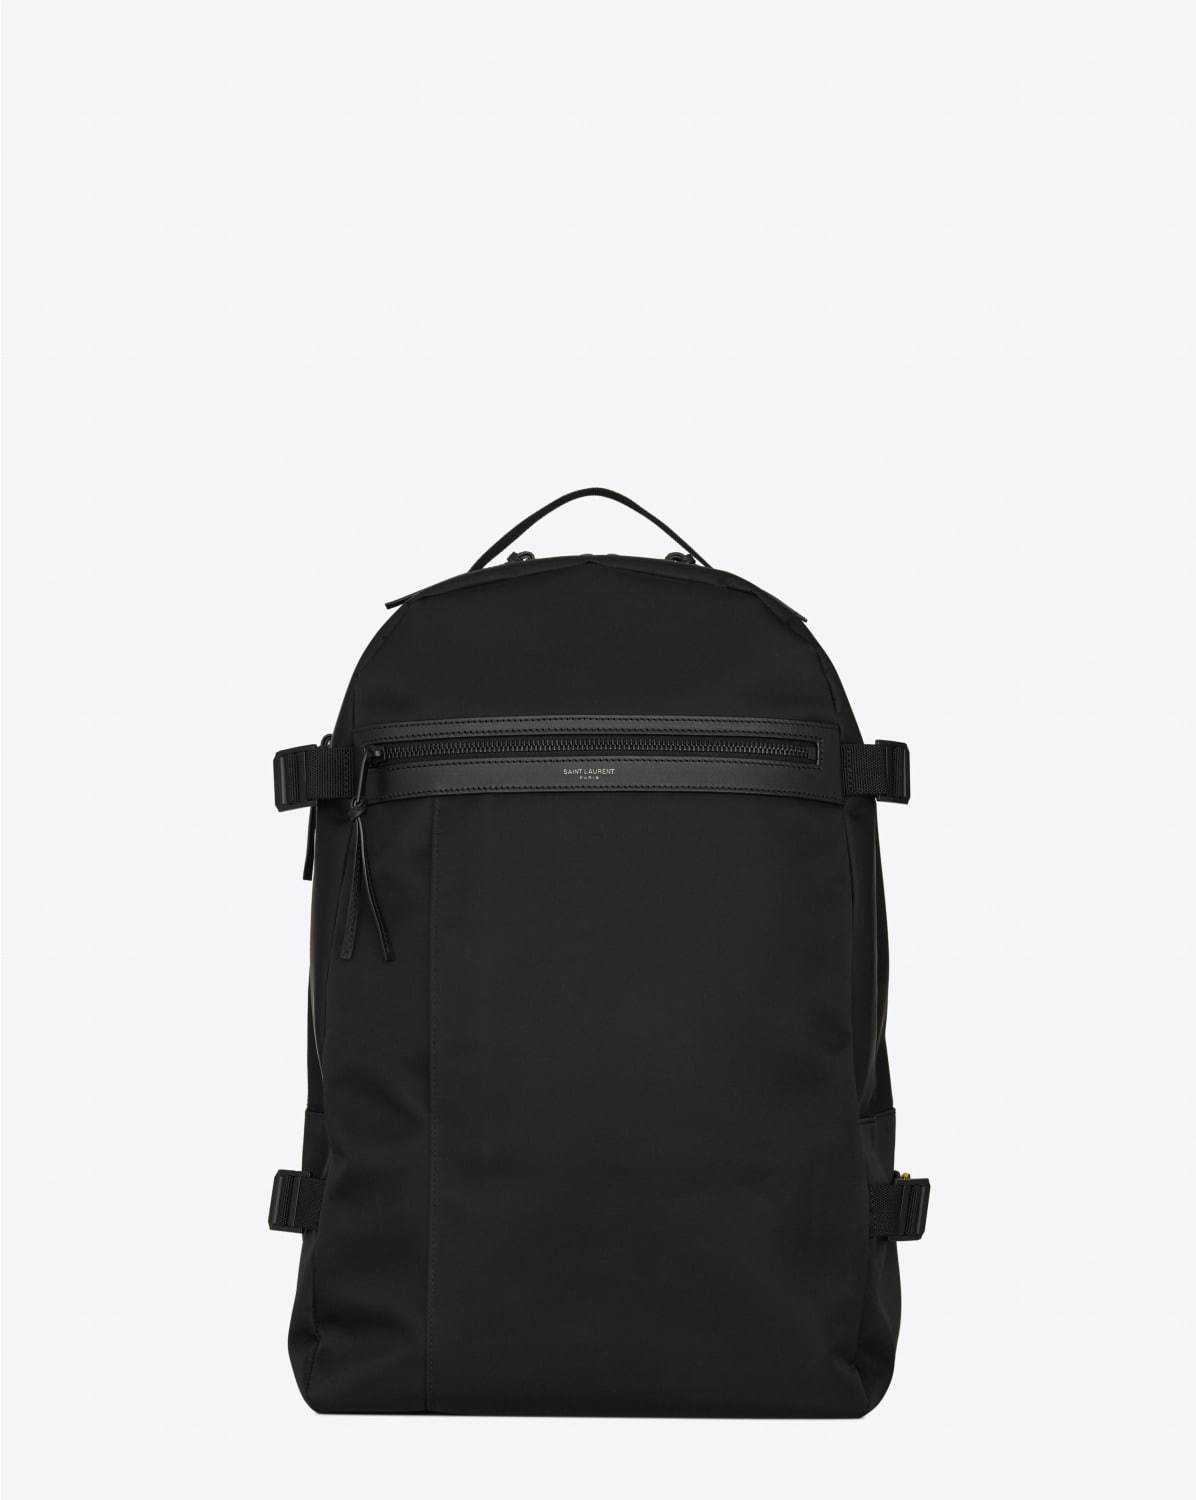 サンローランの新作メンズバックパック「トレック」ハイキングバッグ